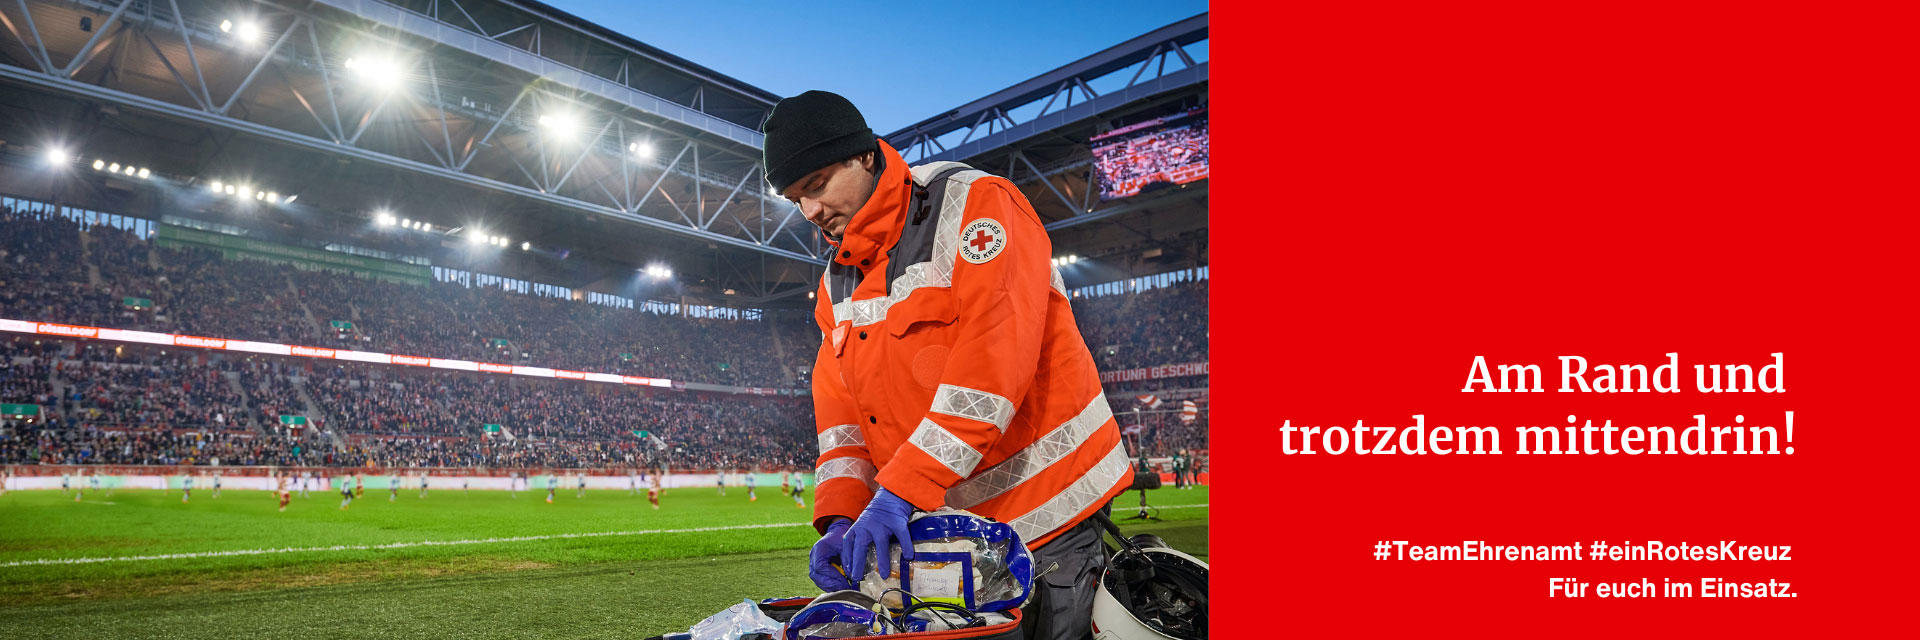 Sanitäter im Fußballstadion - Text: Am Rand und trotzdem mittendrin #TeamEhrenamt #einRotesKreuz Für euch im Einsatz.